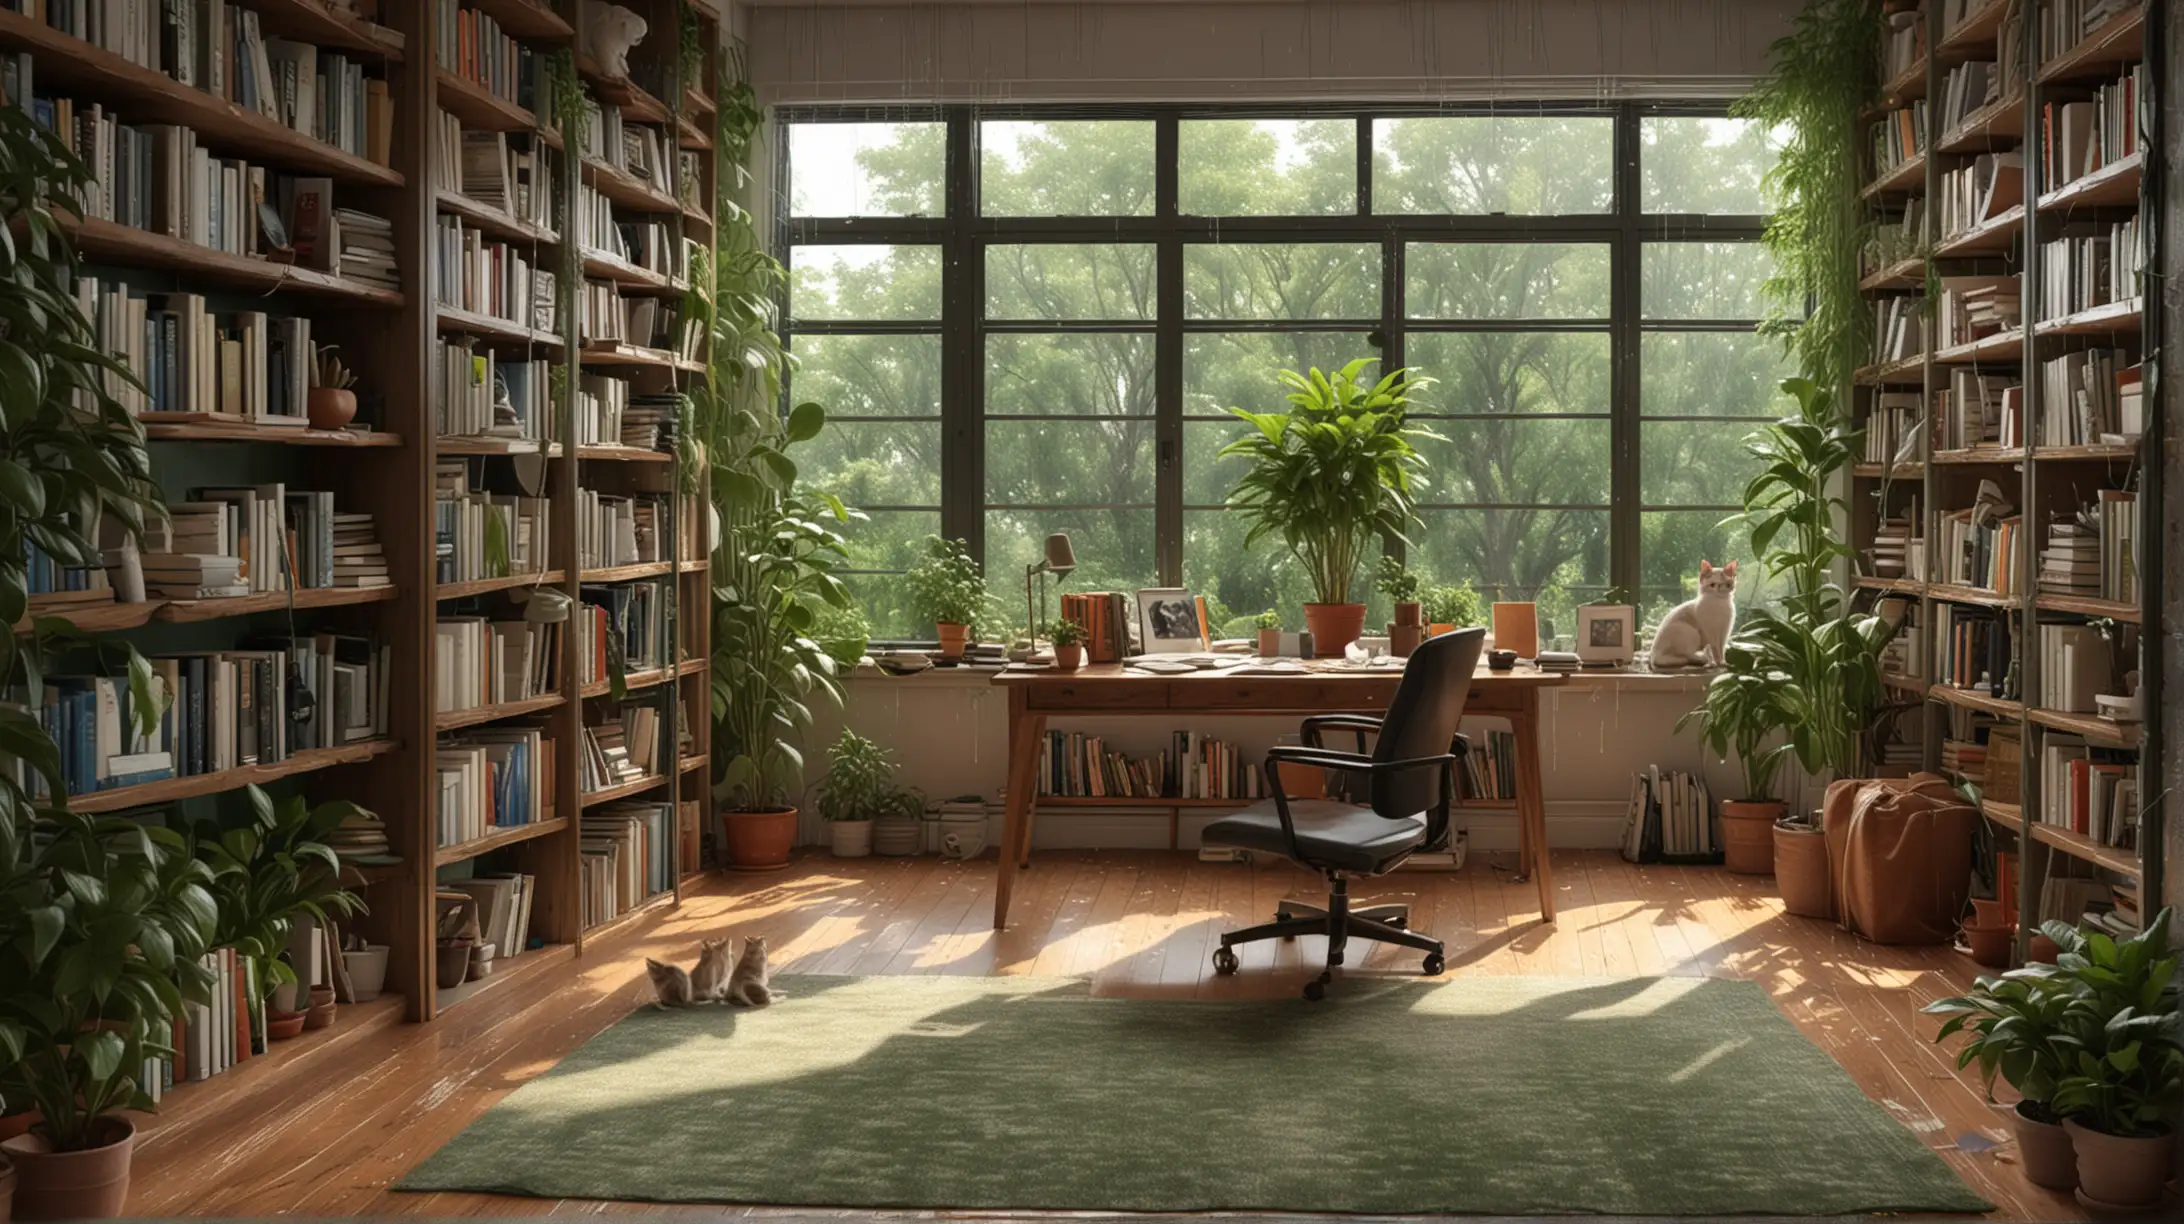 温馨的书房 一整面墙的书架 放满书籍 落地窗 绿植 书桌 电脑 椅子 窗外下雨 小猫 8k 电脑桌  地上放满书和画